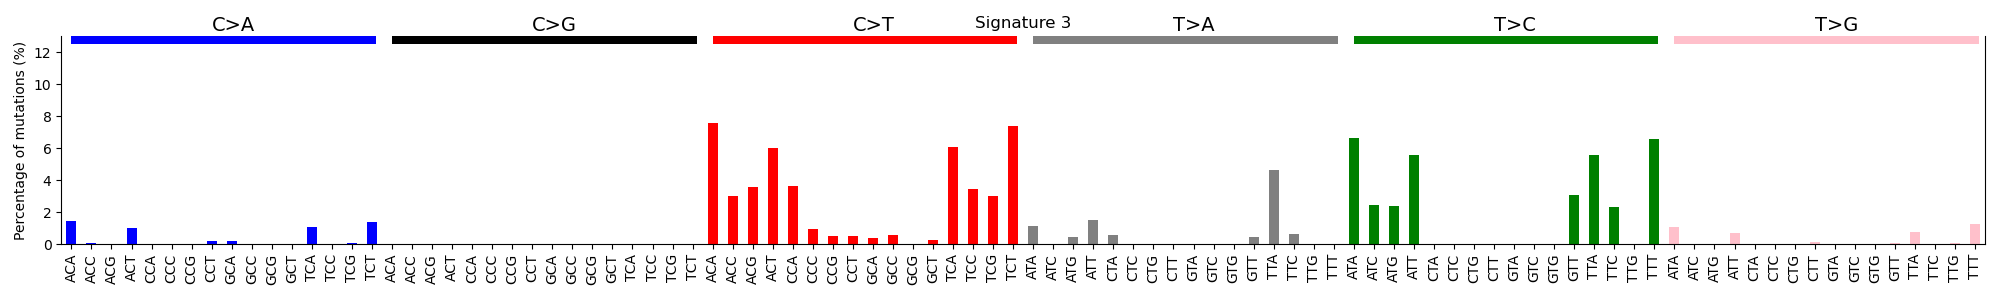 Fig11. Signature 3